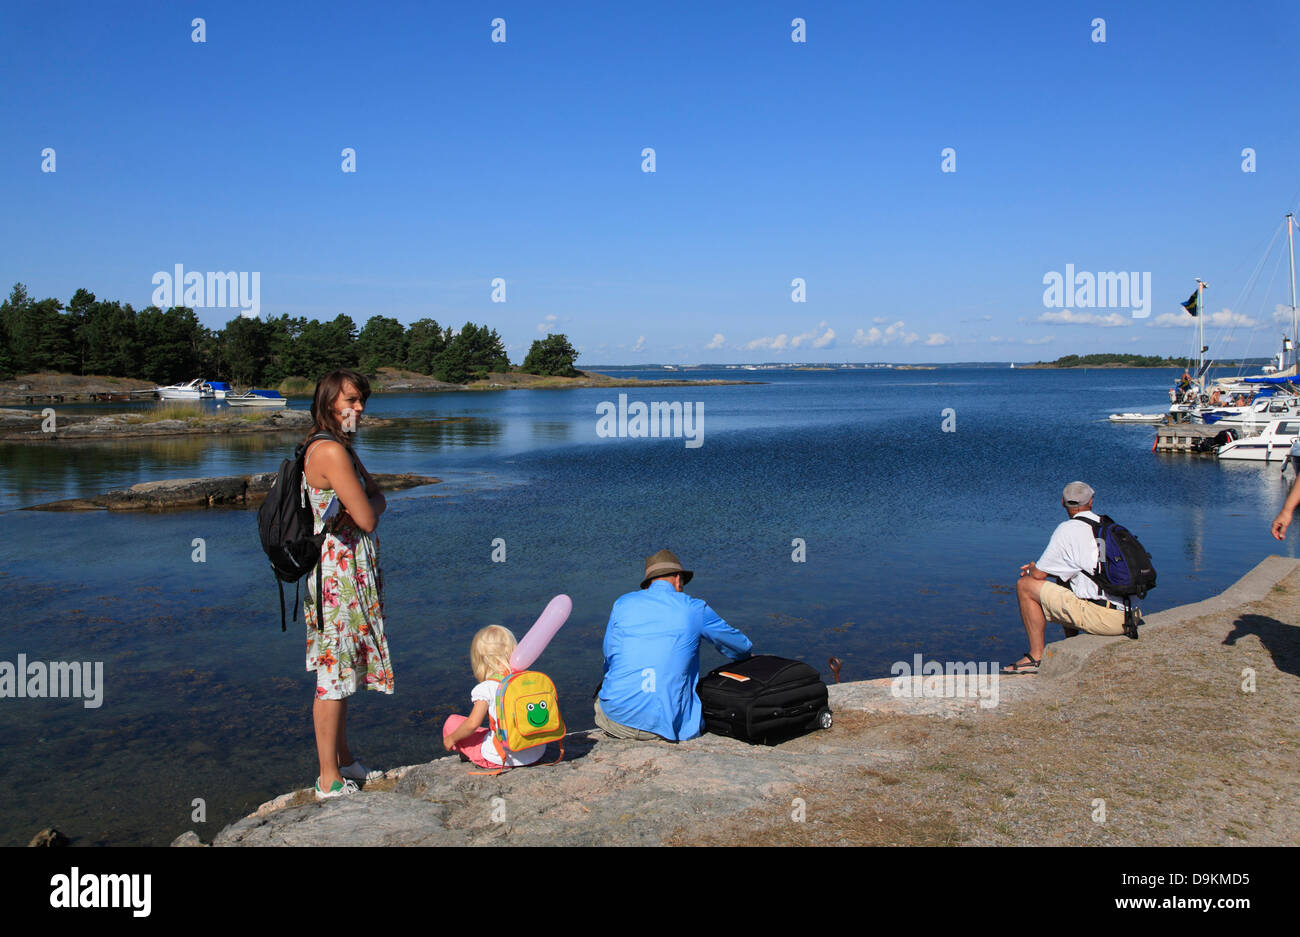 Nattaroe Island, les touristes à Little Harbour, l'archipel de Stockholm, côte de la mer Baltique, la Suède, Scandinavie Banque D'Images